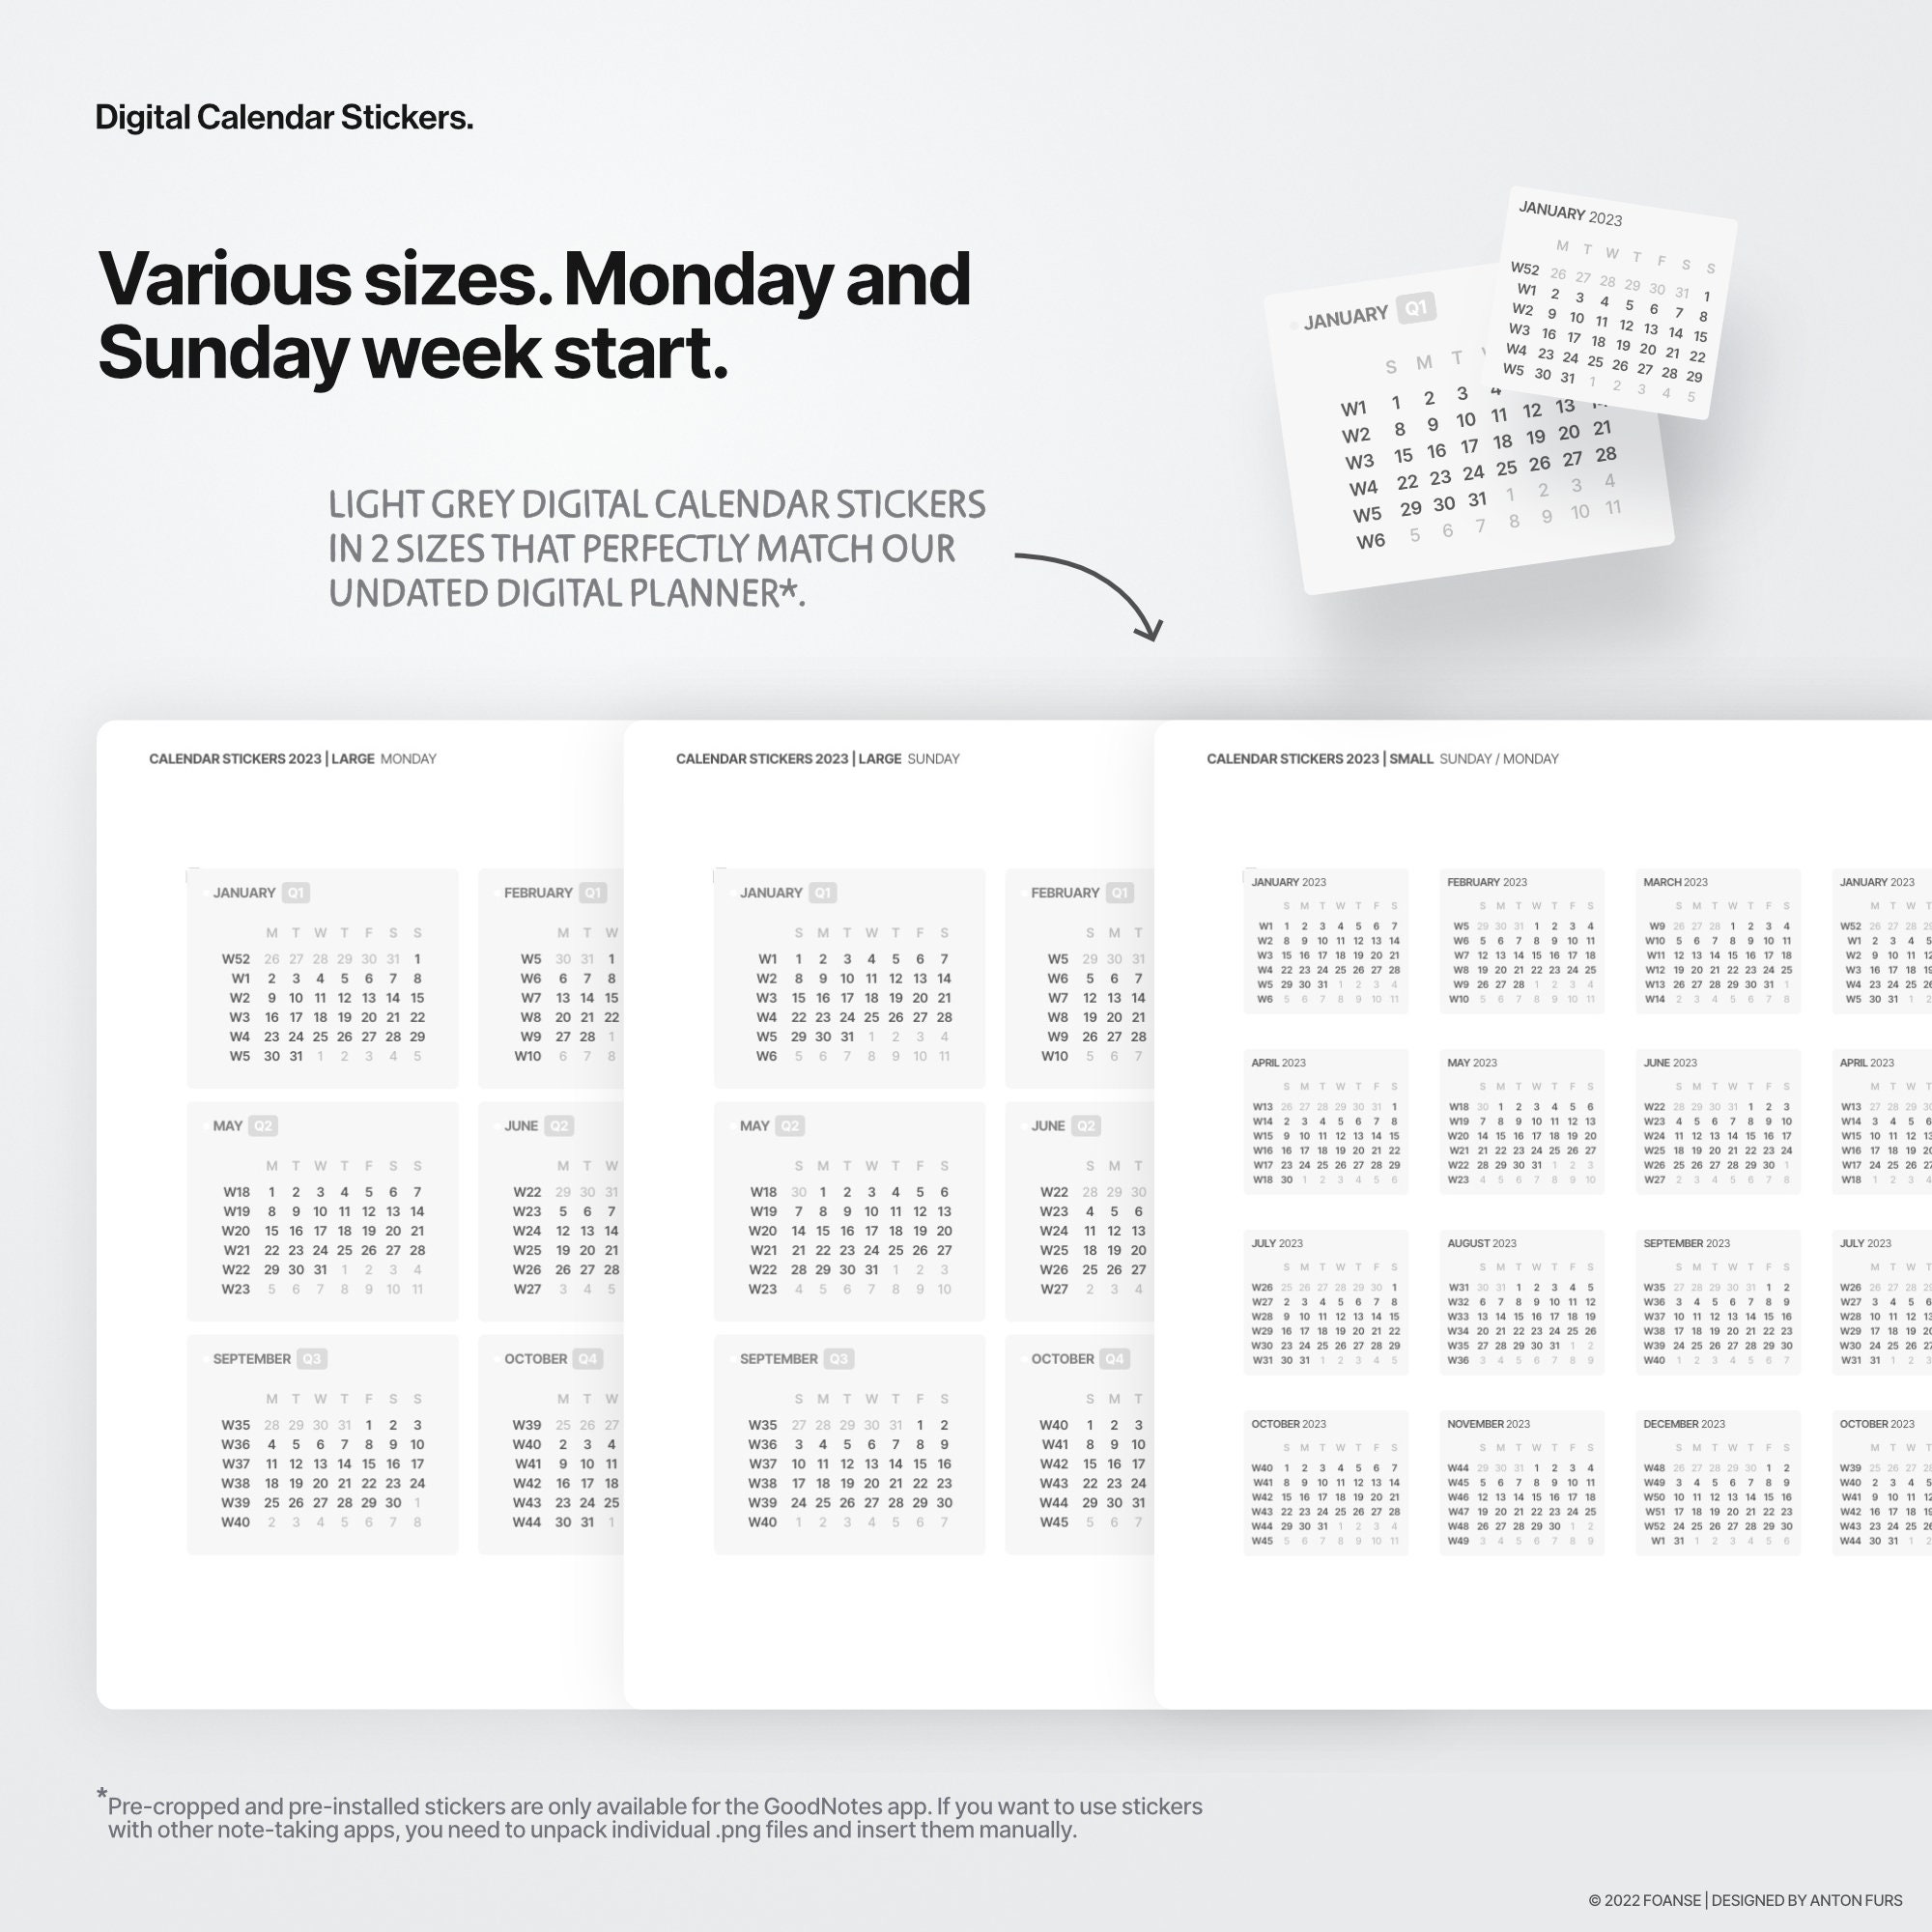 Digital Calendar Stickers for Printable Calendars